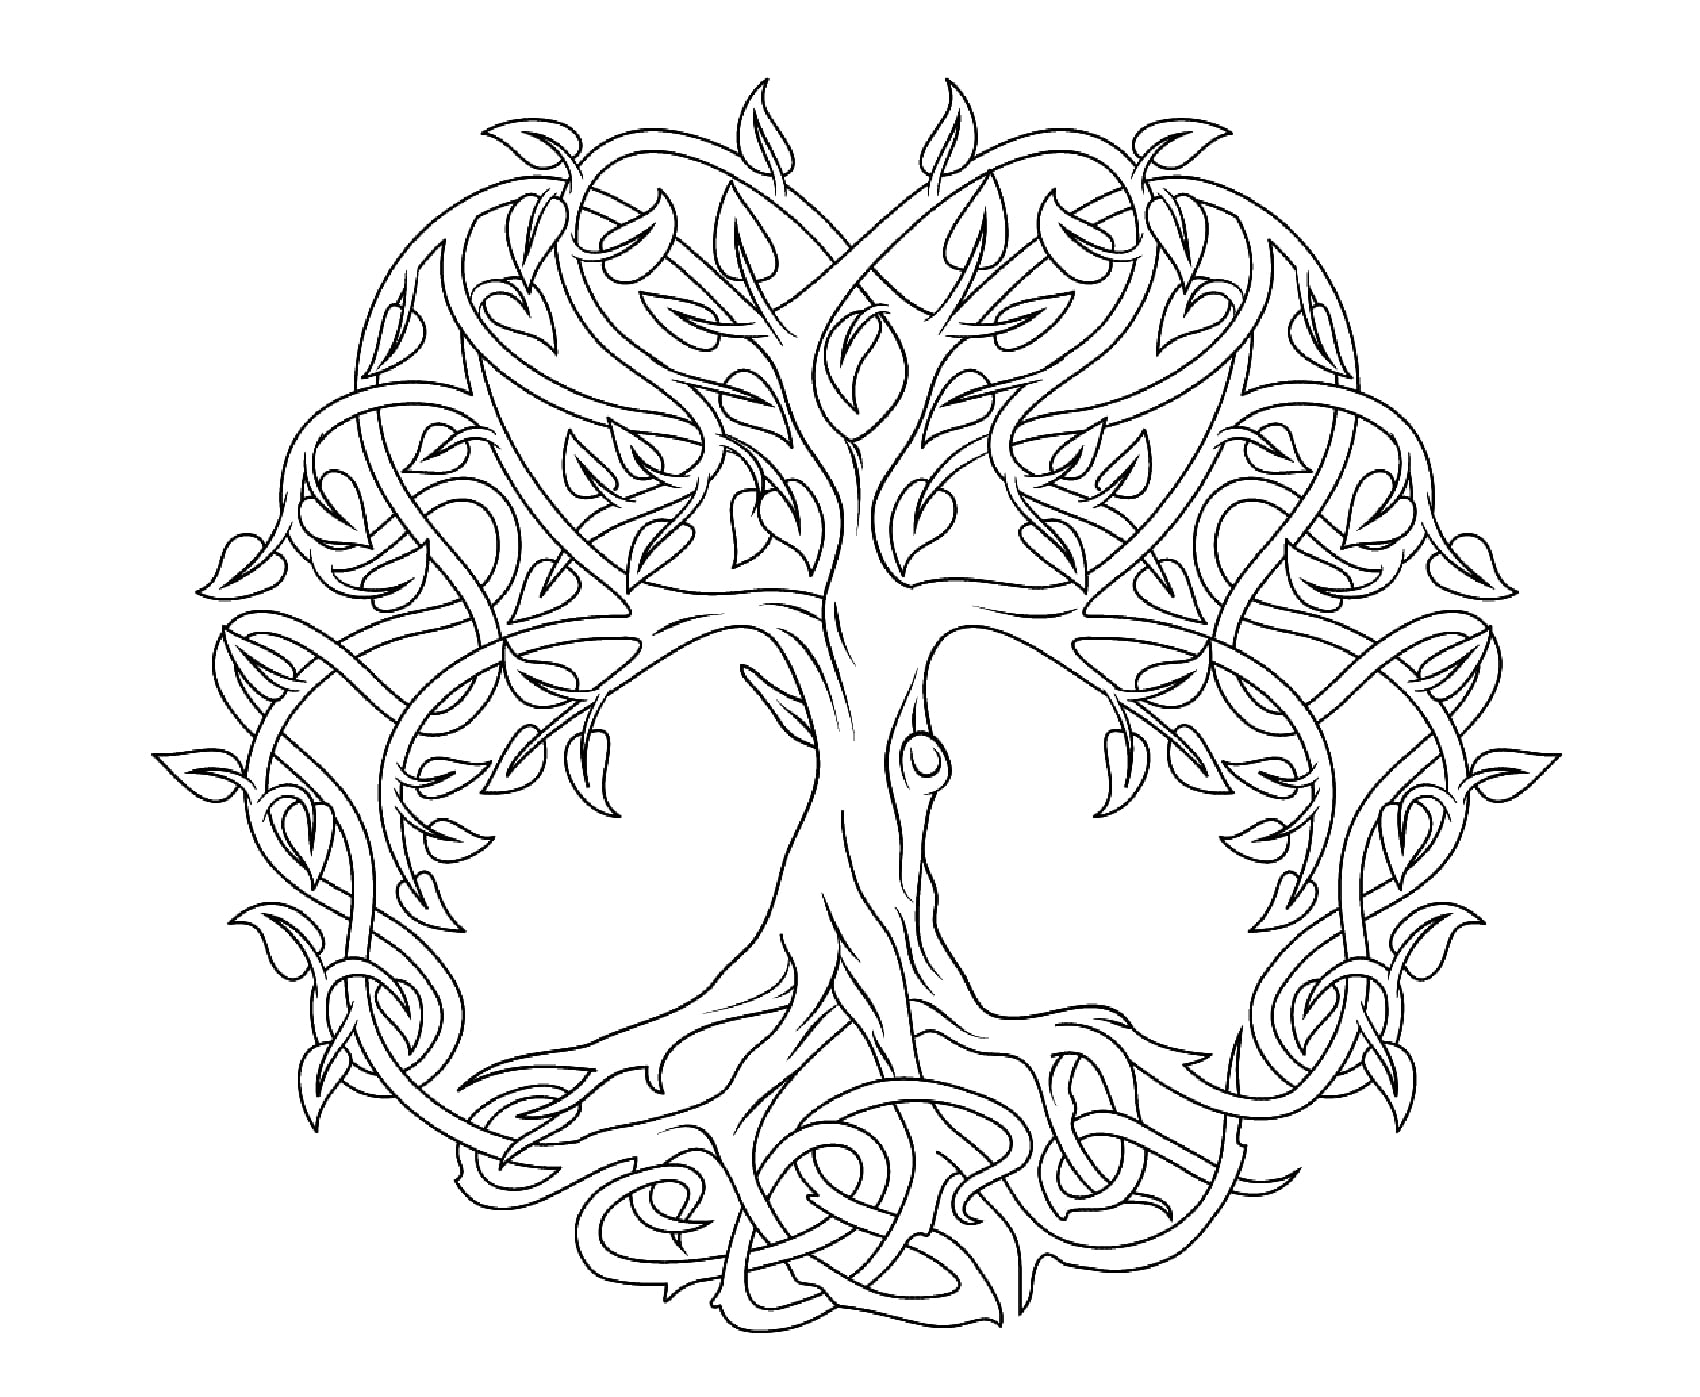 Árvore da vida para colorir. A Árvore da Vida celta representa o conceito de convergência das forças da natureza para criar harmonia. Estas árvores eram tão grandes e extensas que, com os seus ramos, podiam formar uma floresta inteira, Fonte : Supercoloring   Artista : Artsashina